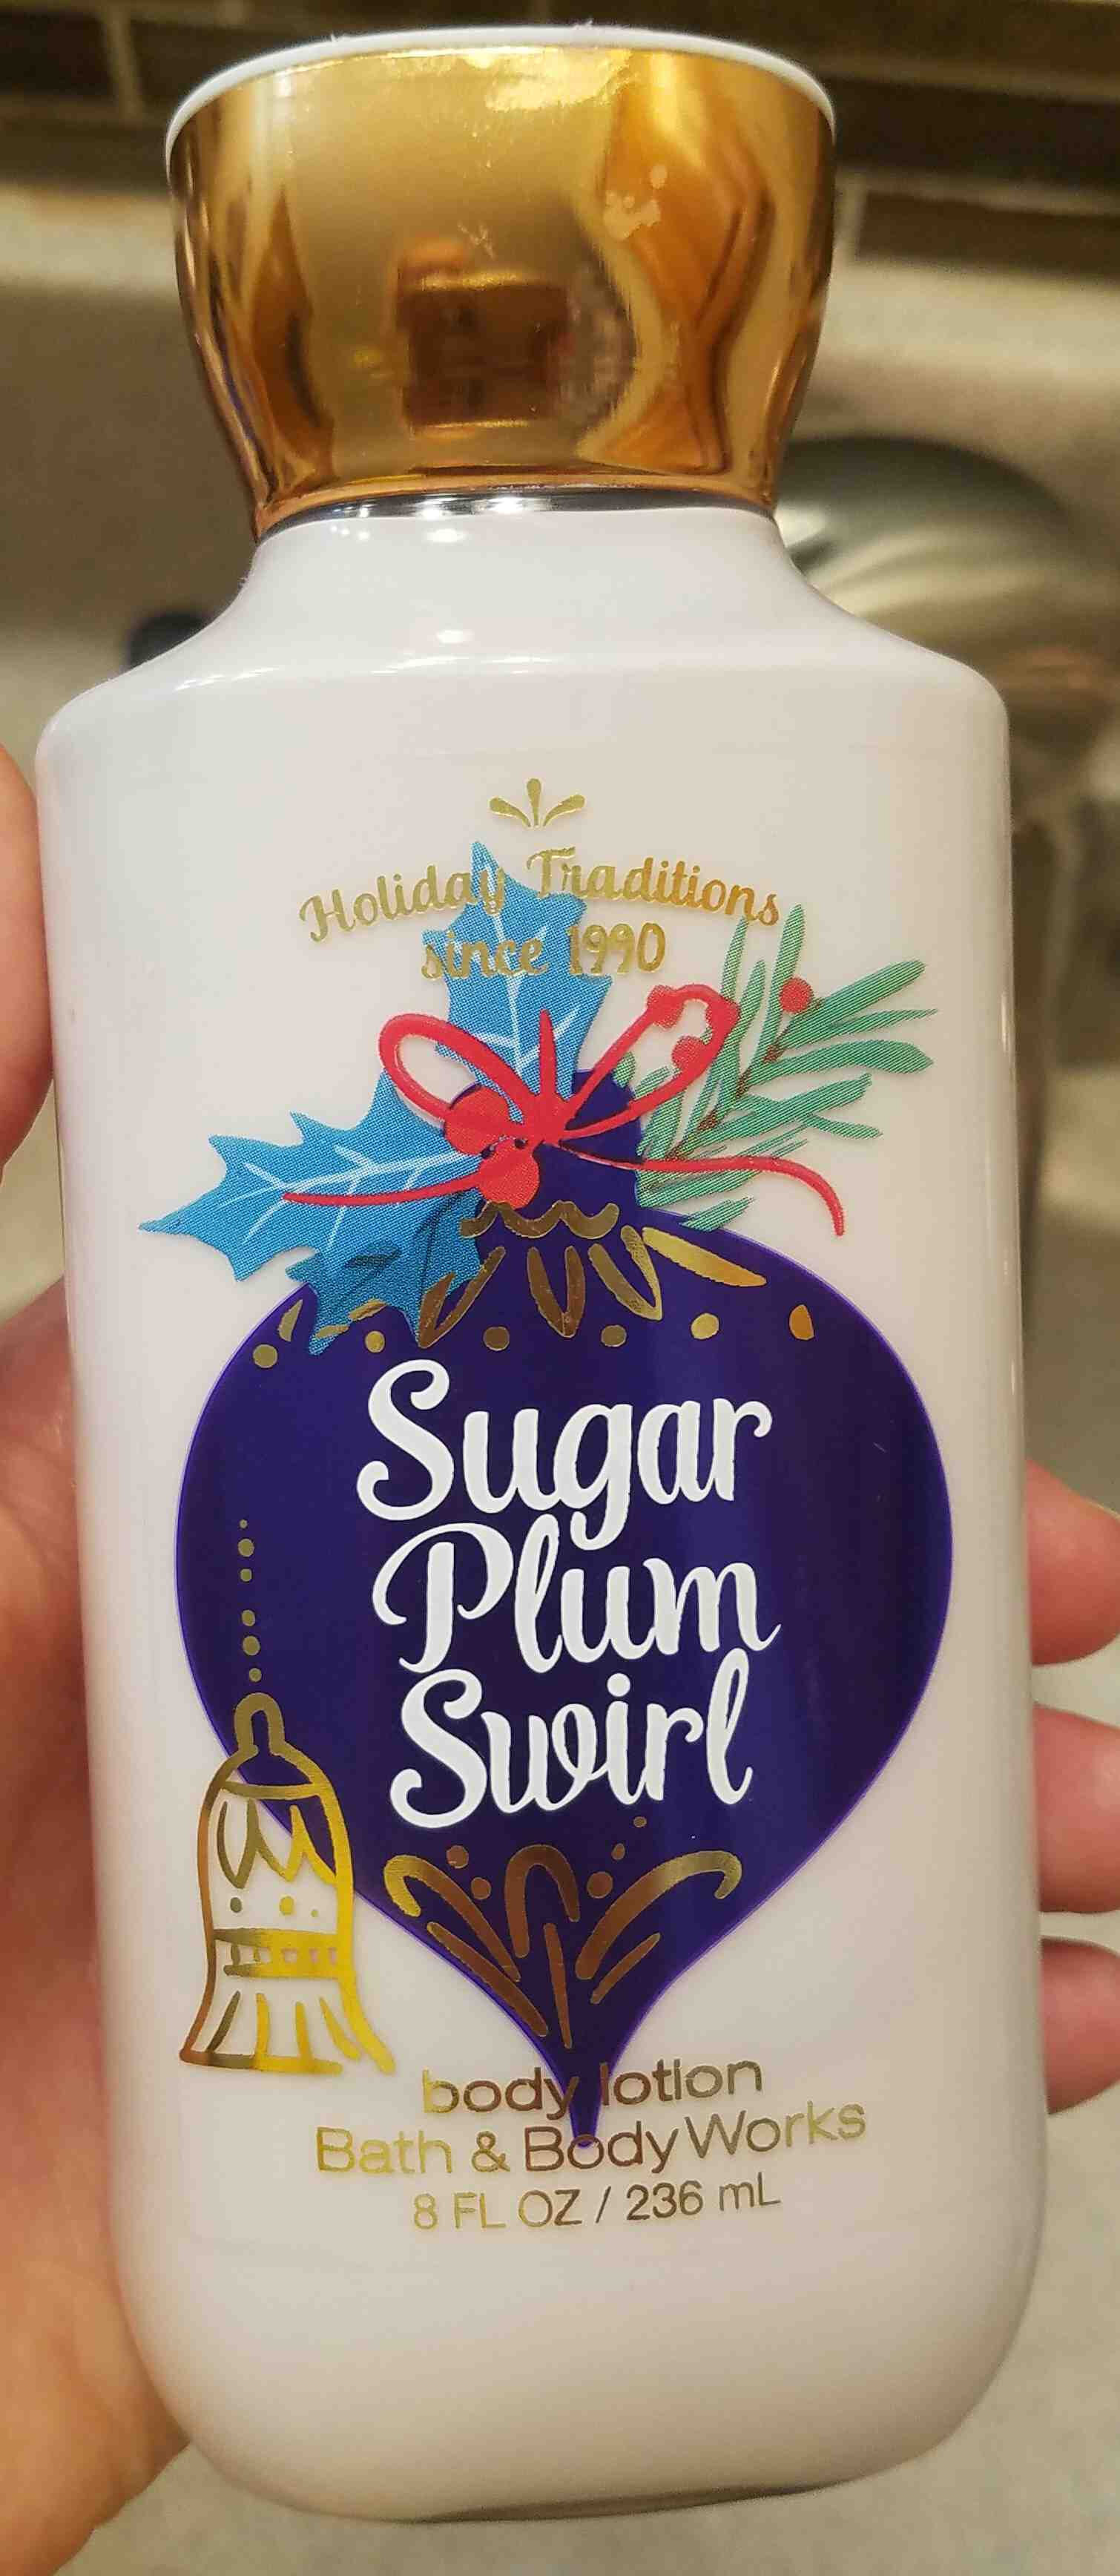 Bath and Body Works Sugar Plum Swirl Body Lotion - Produkt - en